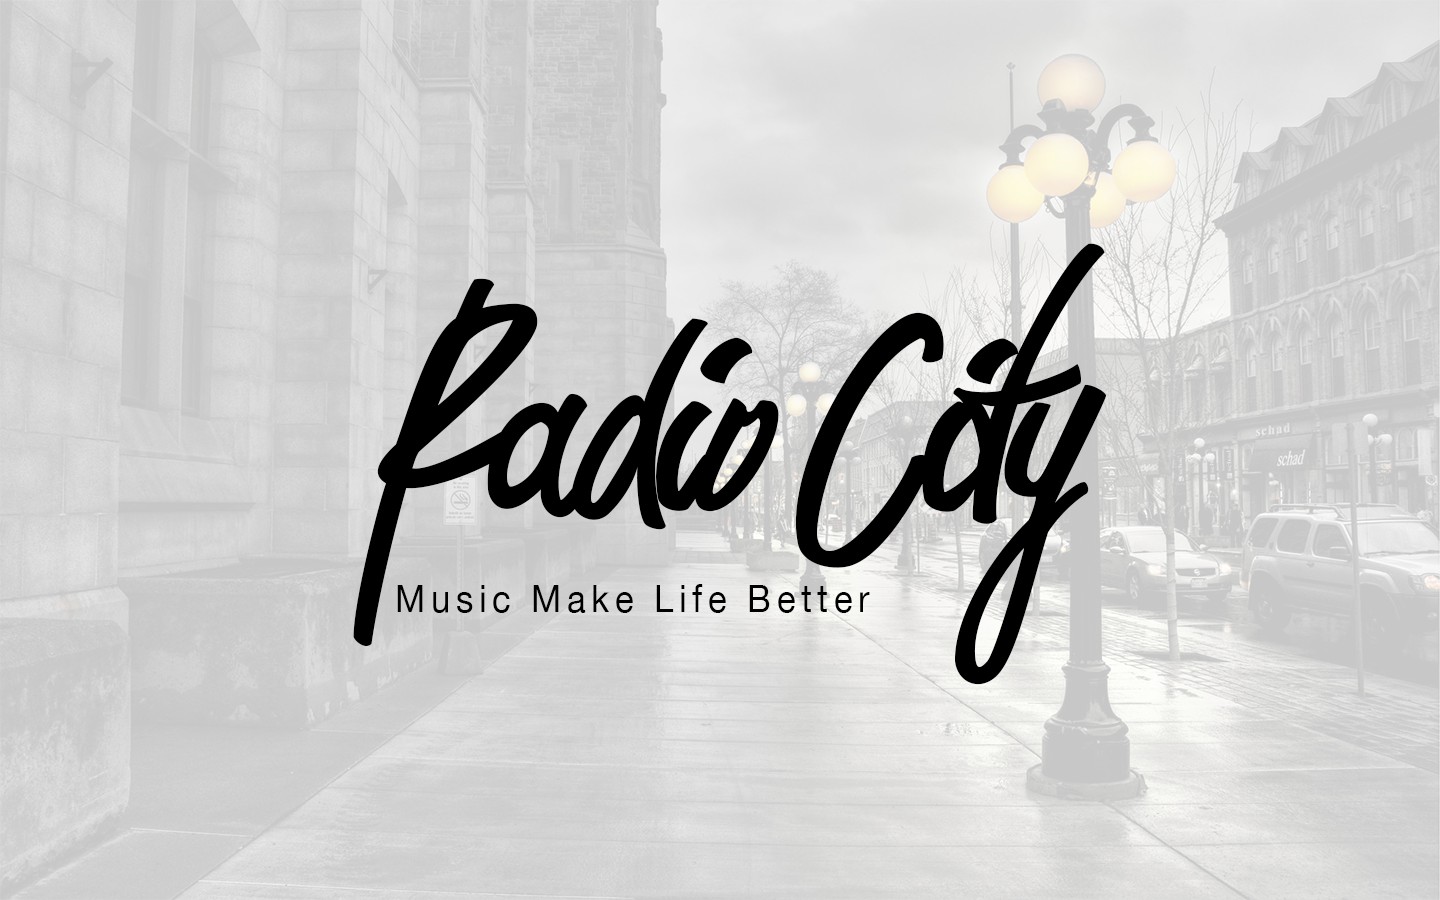 Музыкальная жизнь логотип. Картинка Мьюзик Сити. Music text логотип. Music Life картинки.